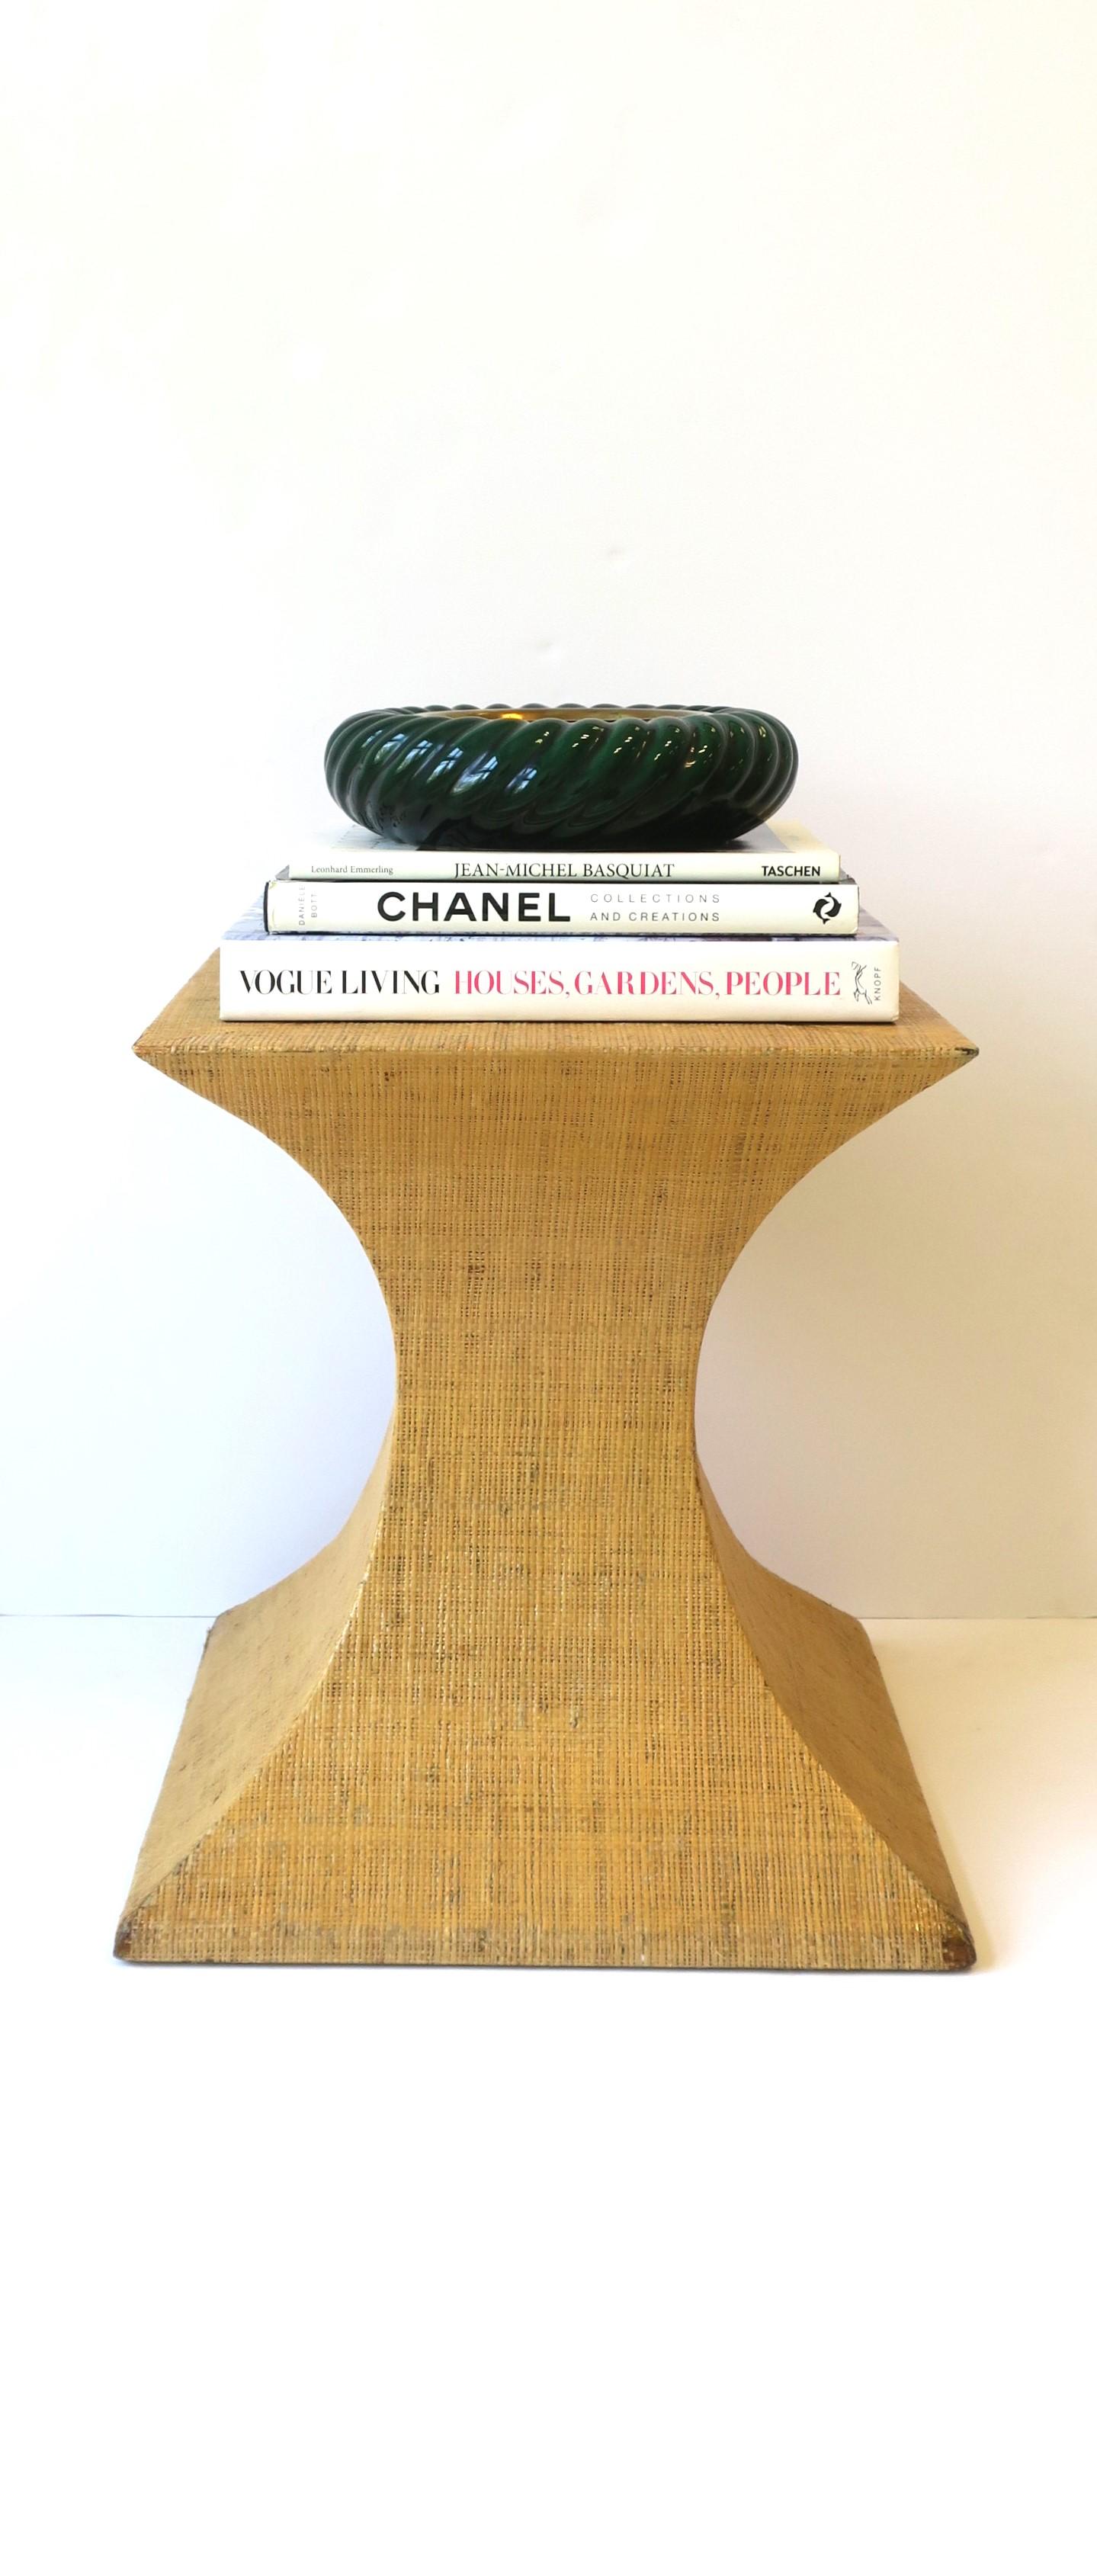 Modern Grasscloth Pedestal Table For Sale